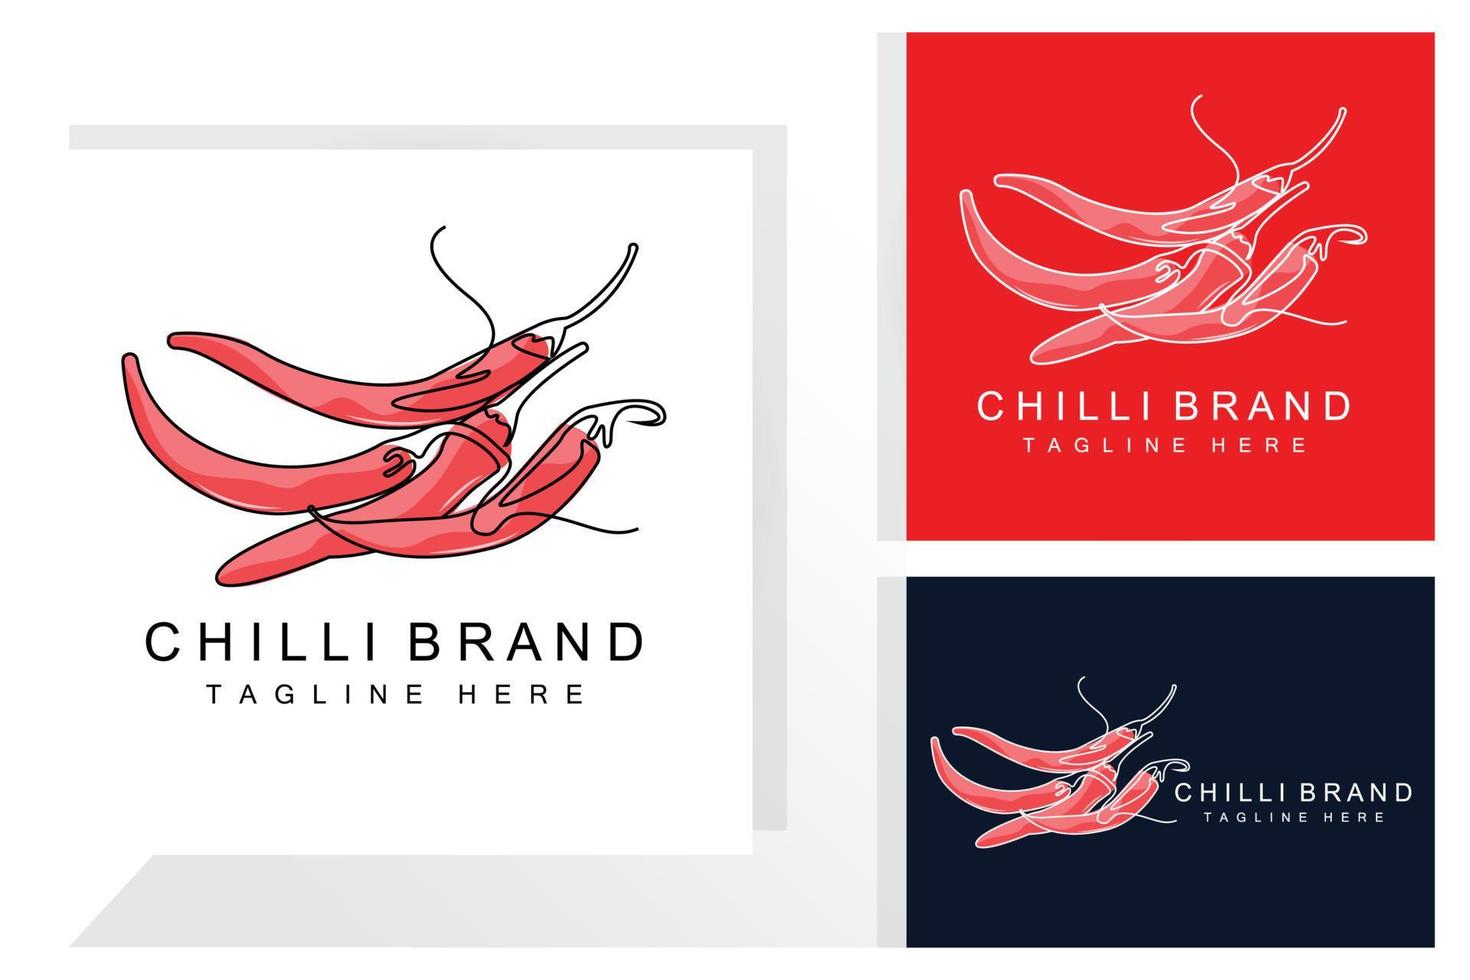 würziges Chili-Logo-Design, rote Gemüseillustration, Küchenzutaten, scharfe Chili-Vektormarkenprodukte vektor